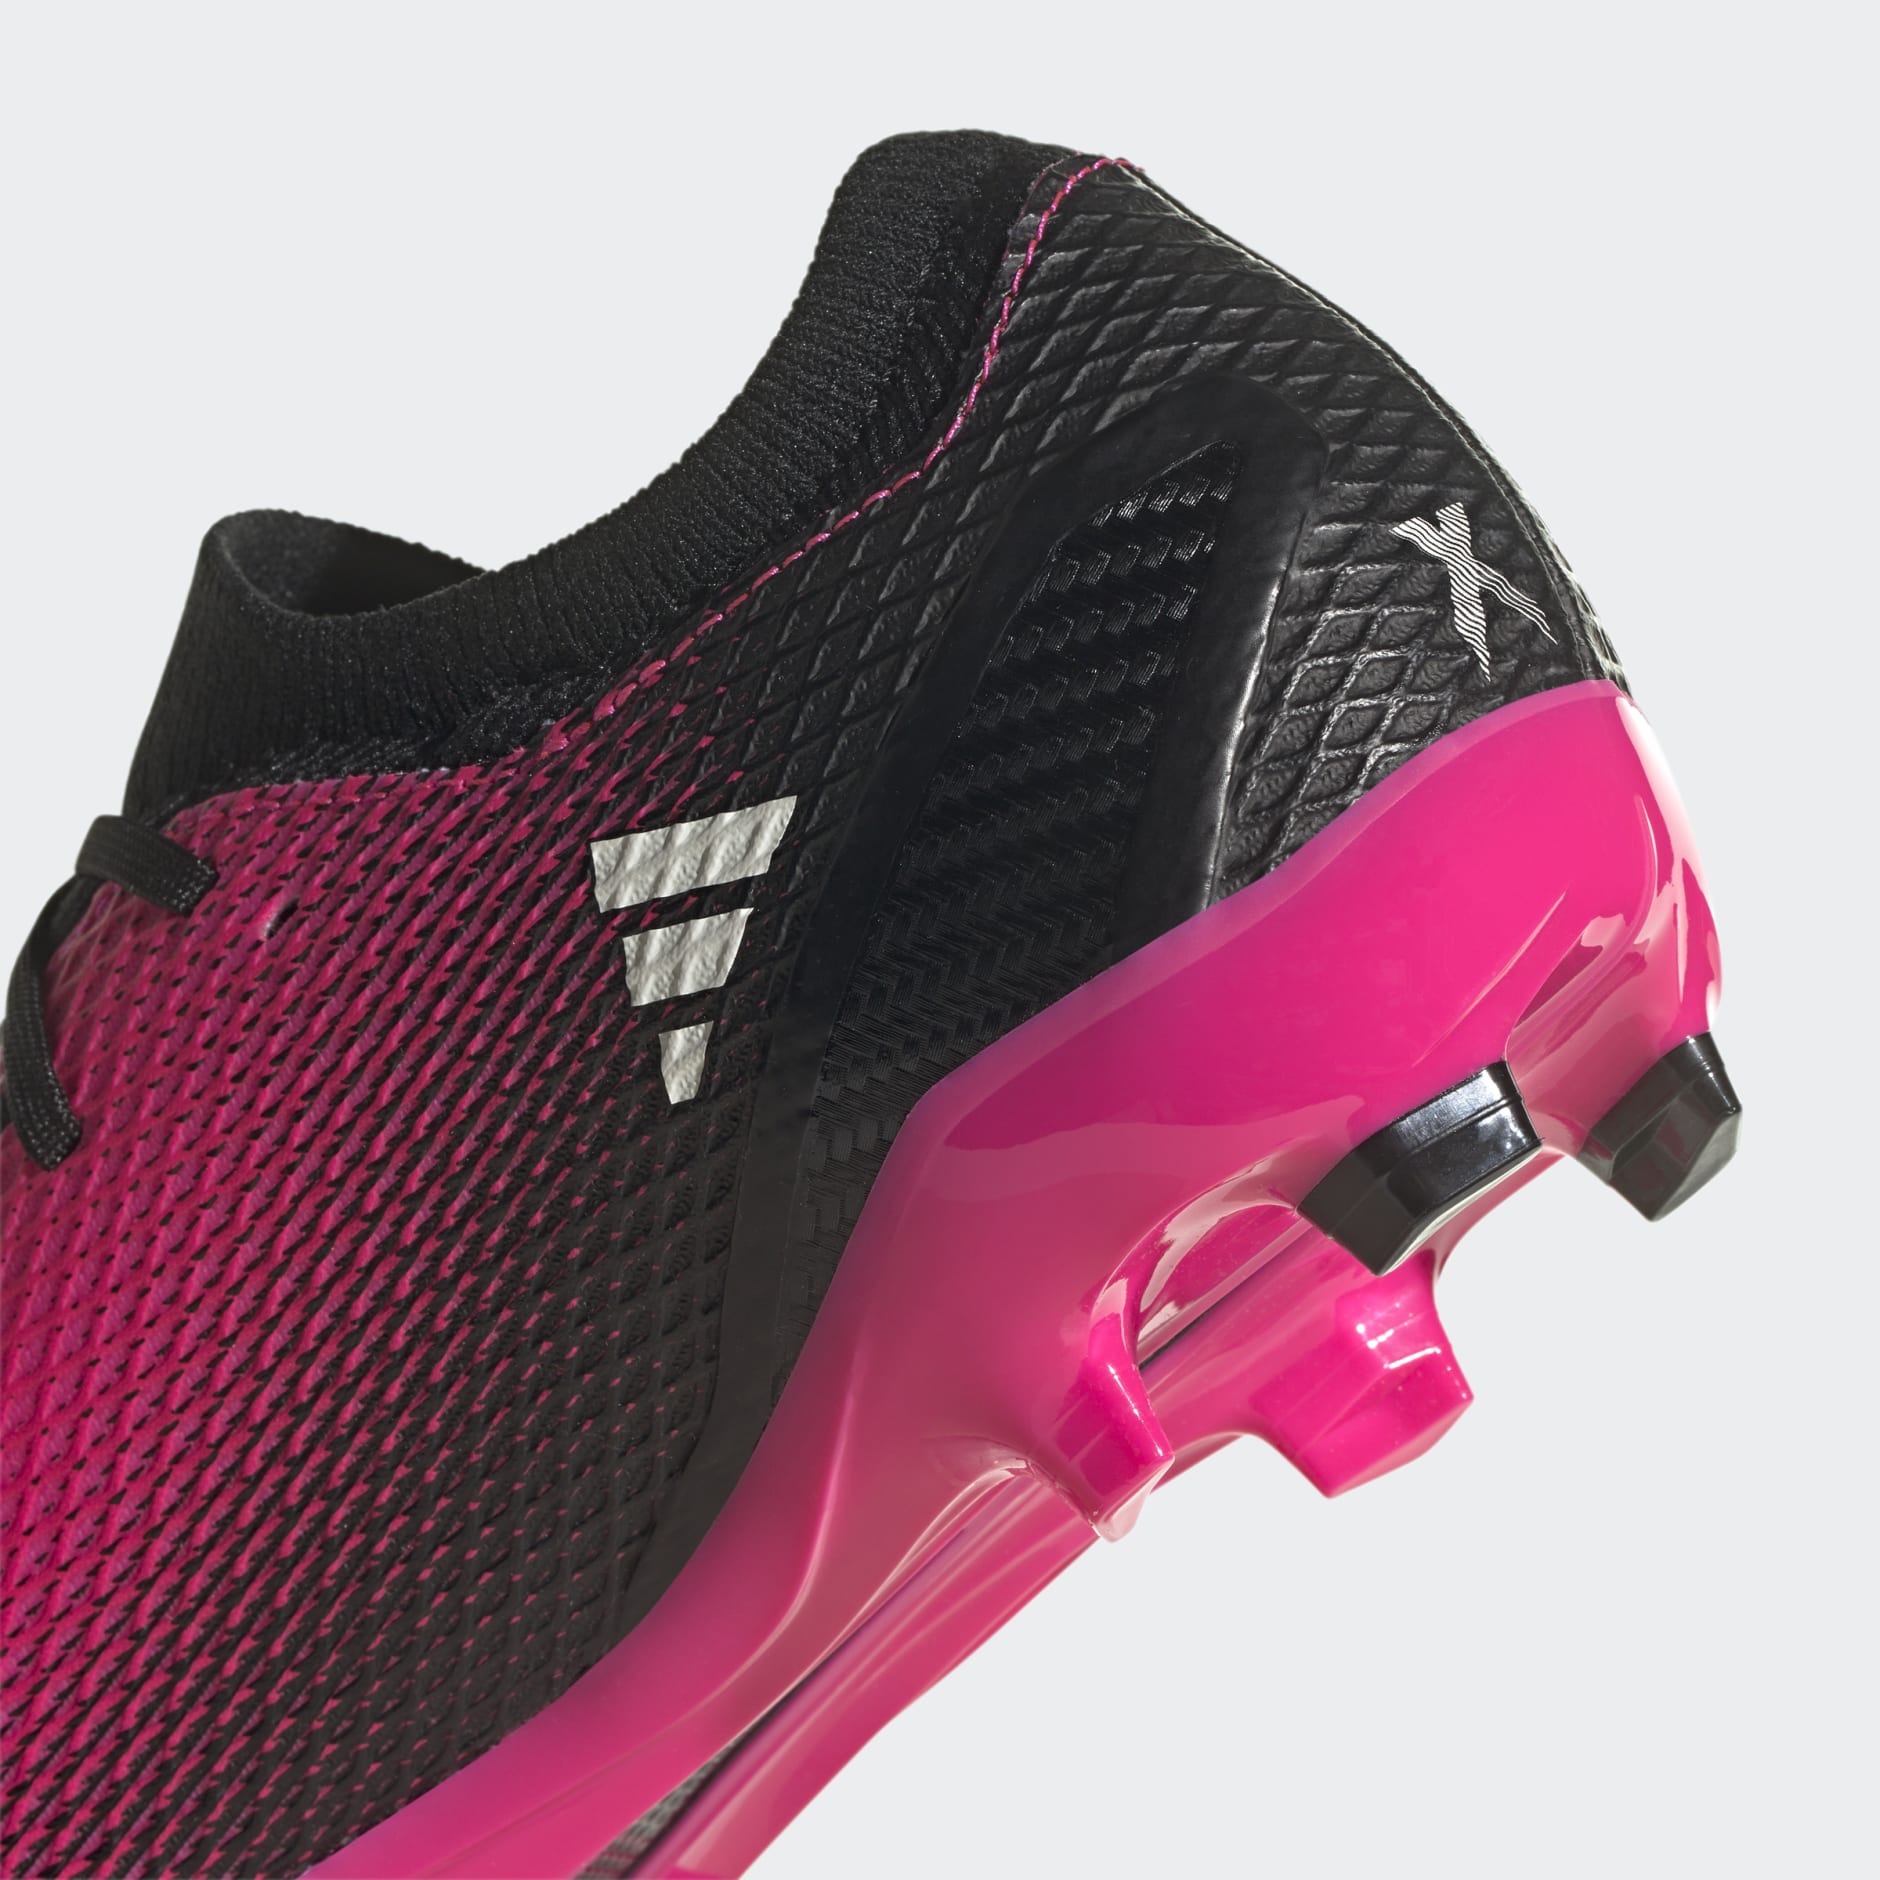 átomo Aplicando reptiles Shoes - X Speedportal.3 Firm Ground Boots - Pink | adidas Oman